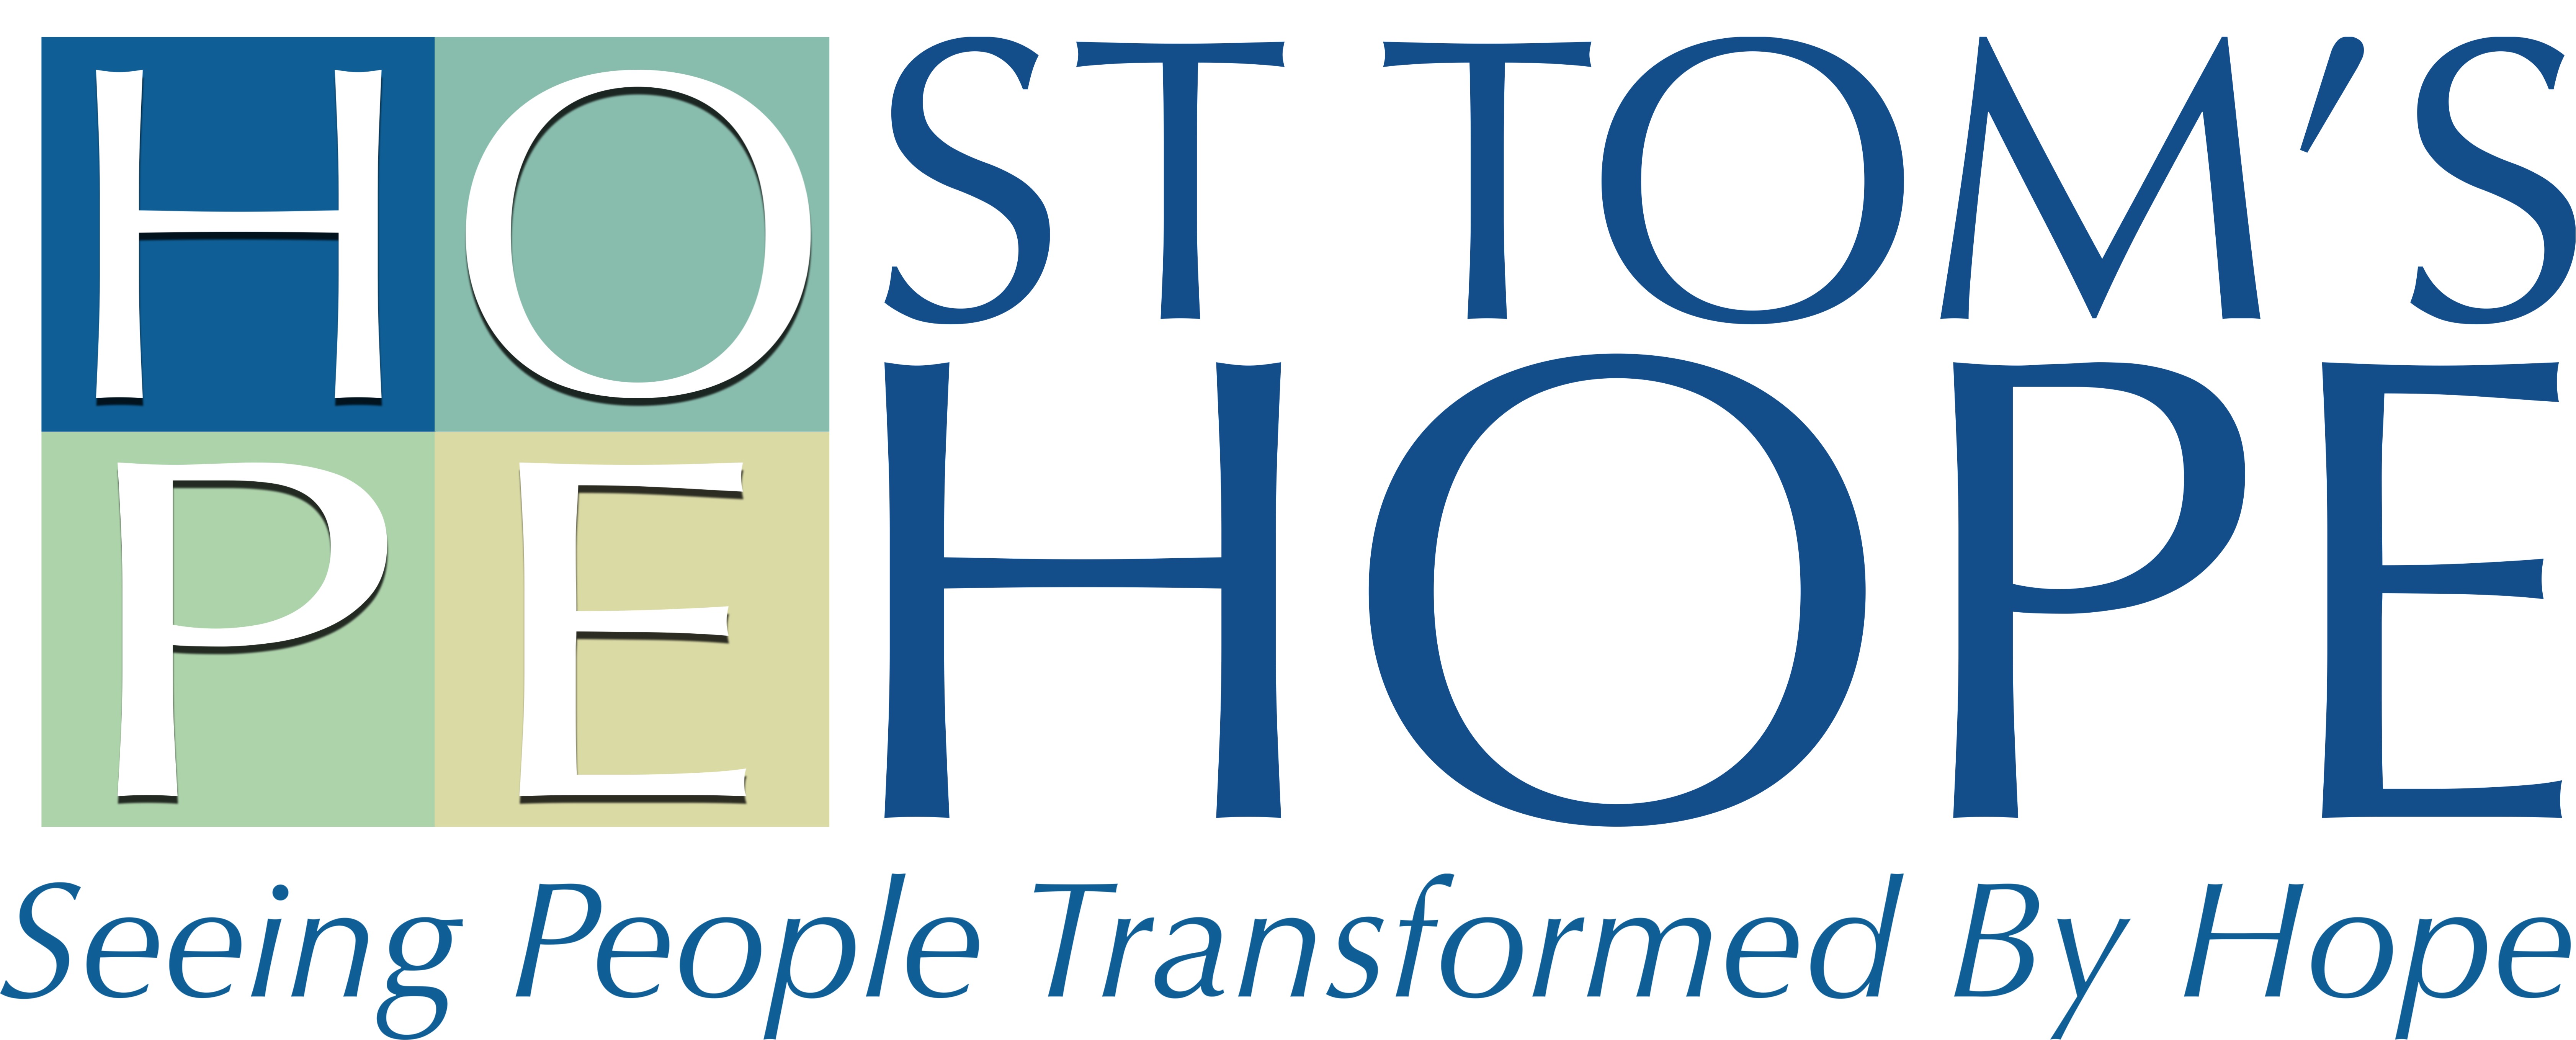 St Tom's Hope logo